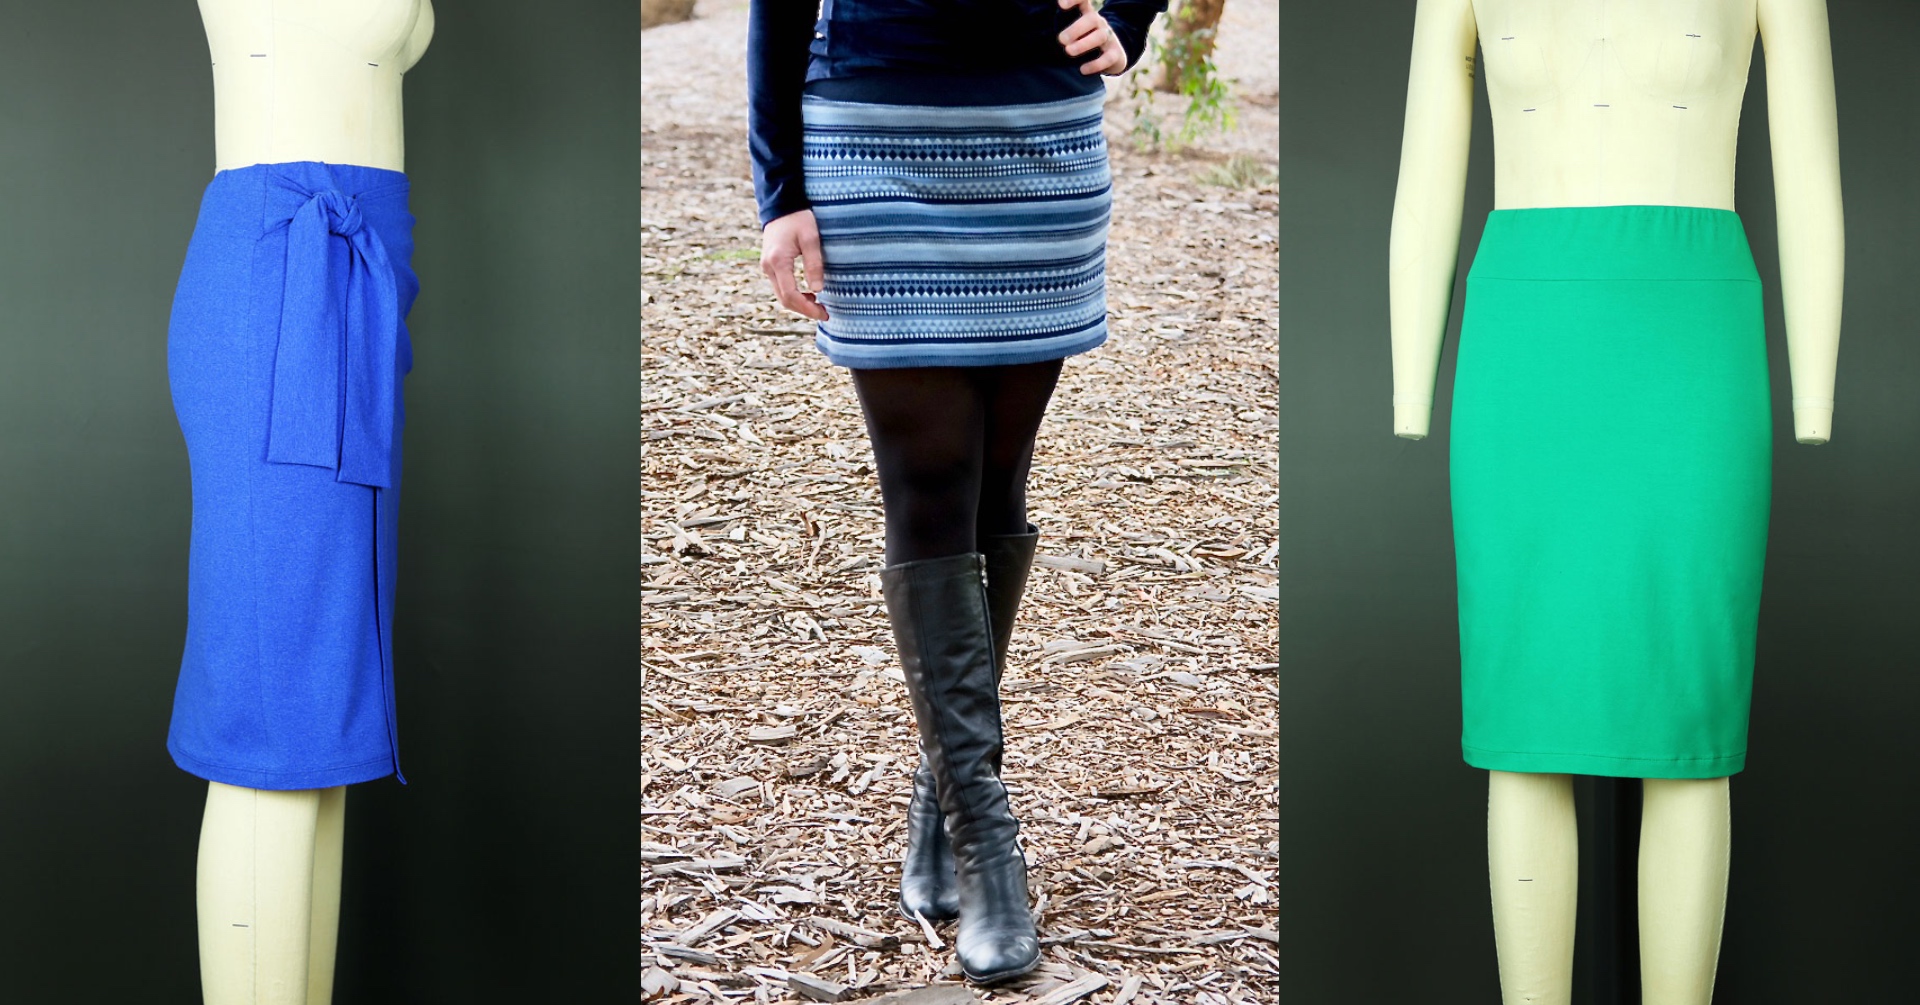 Sew + Tell: Shelley's Kensington Mini Skirt, Blog